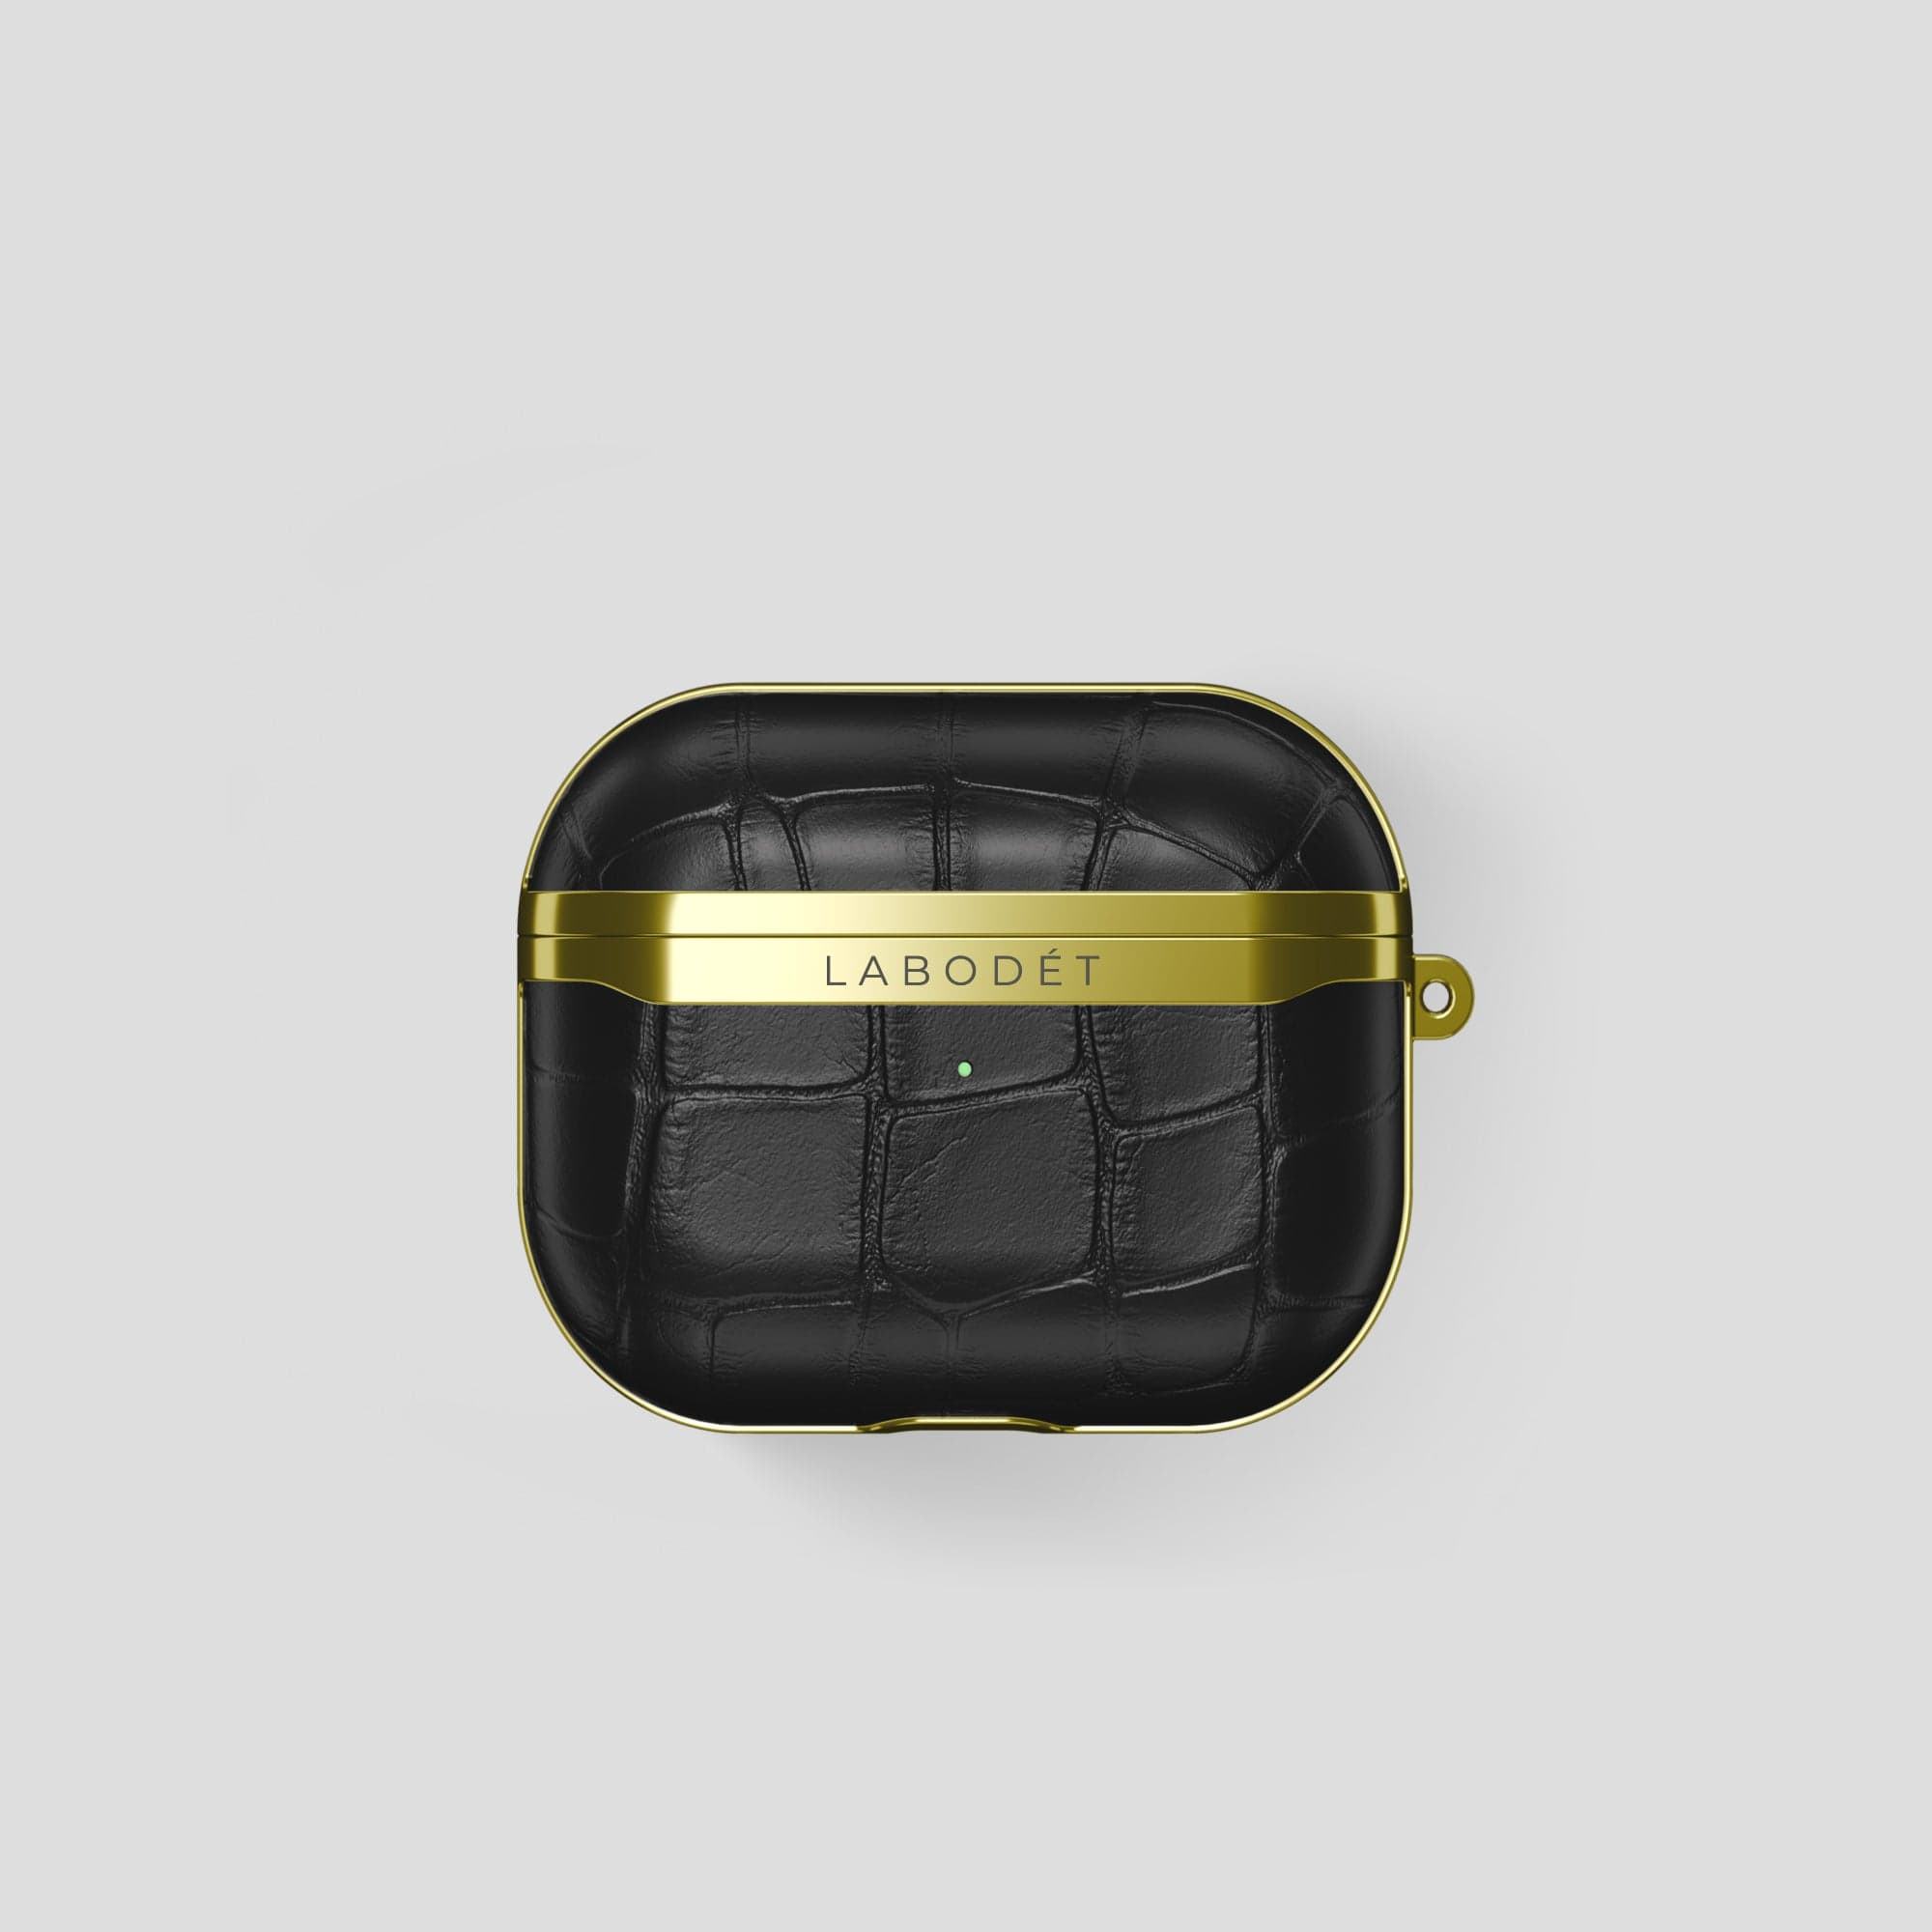 Classic Black Louis Vuitton X Supreme iPad Air Case